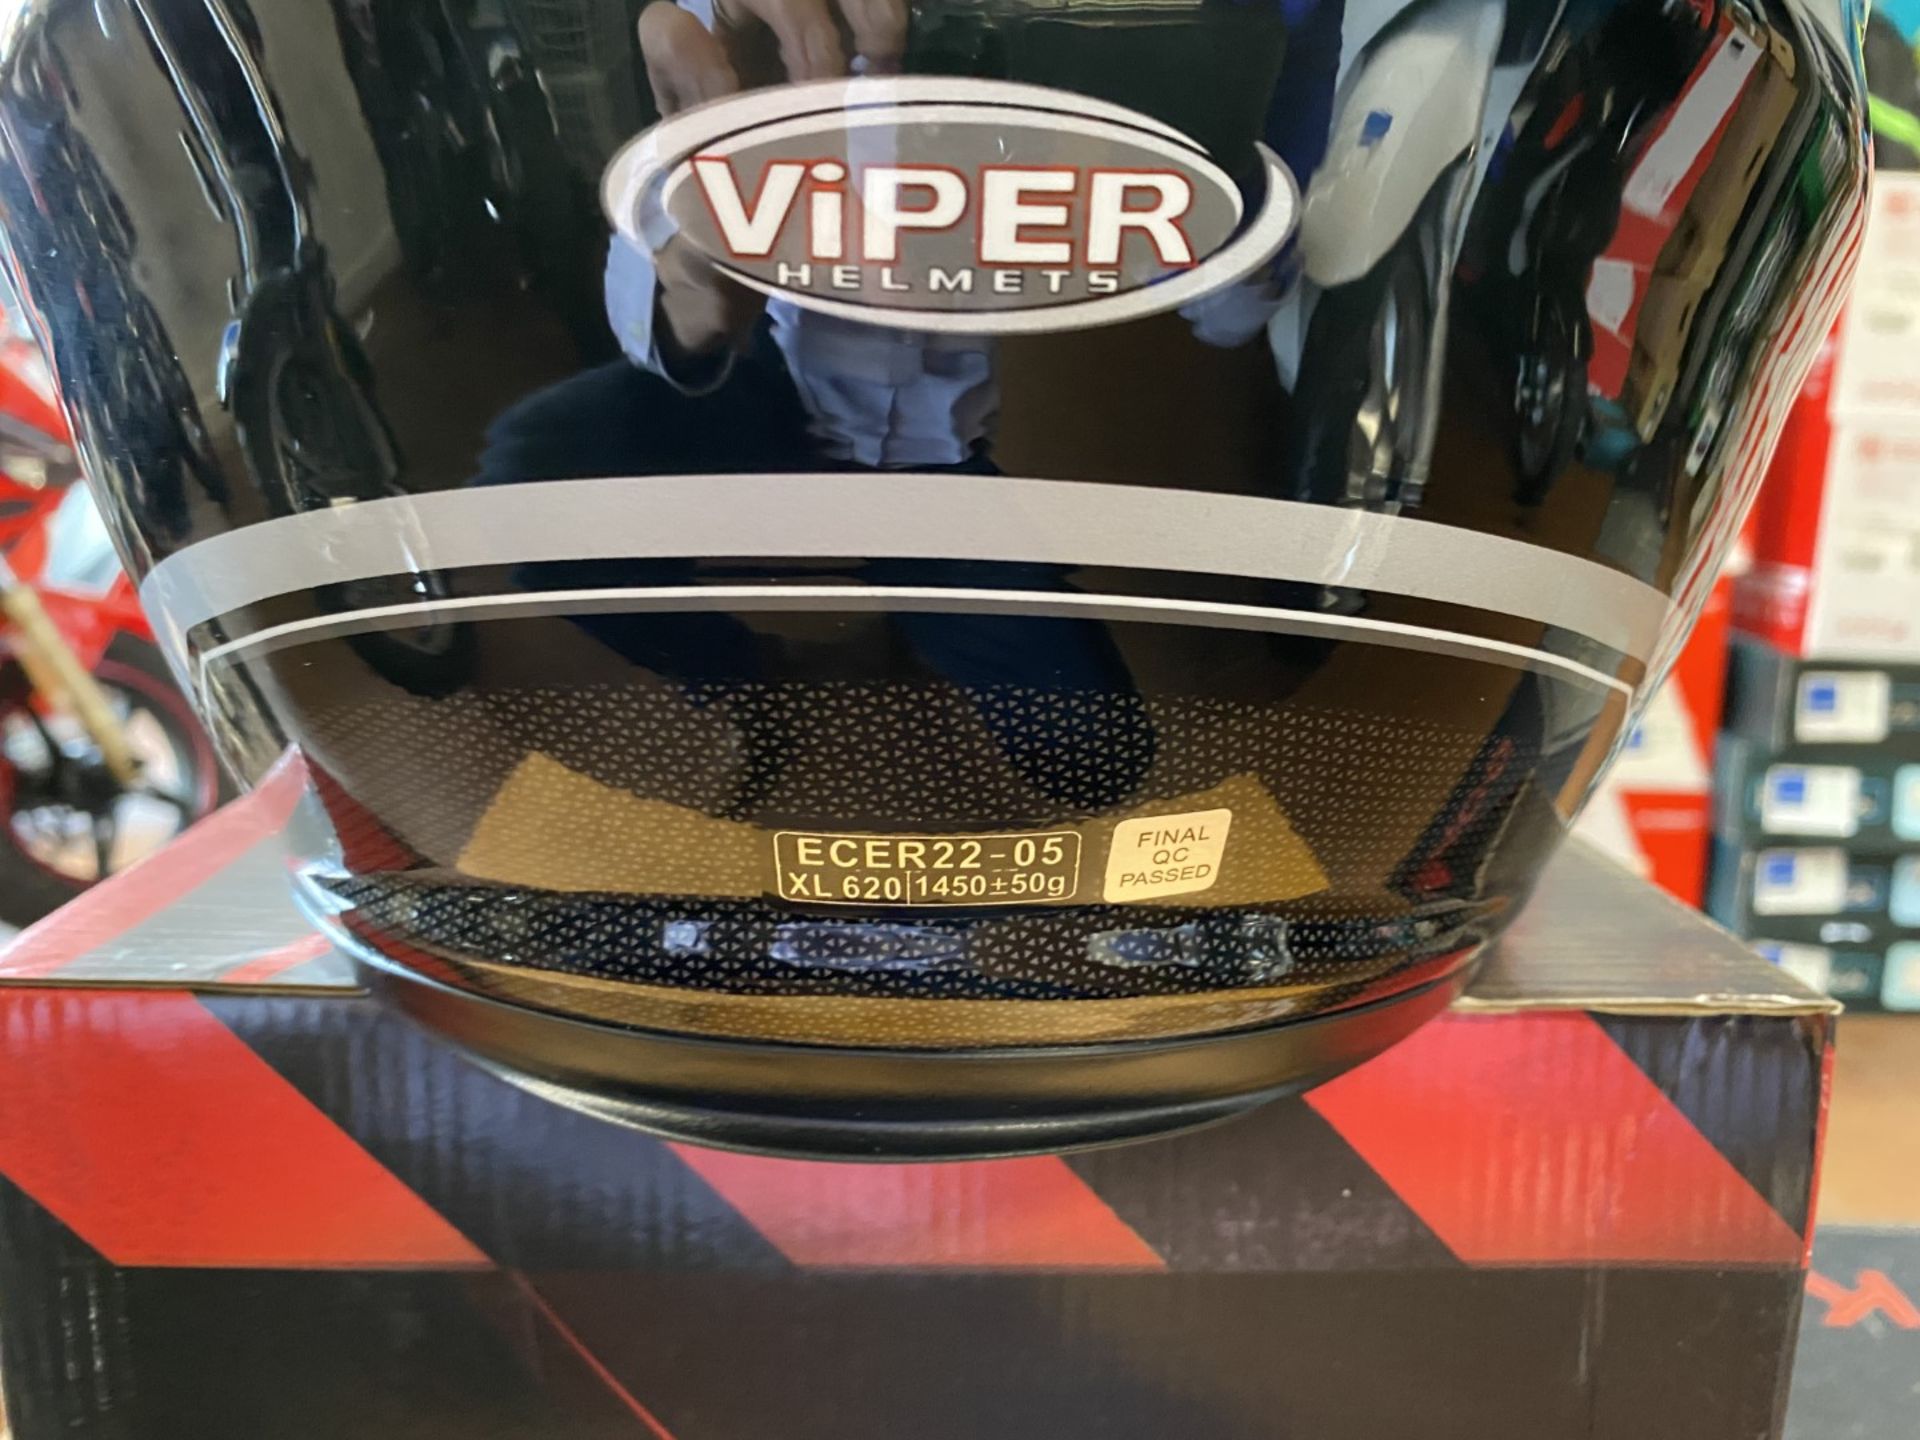 Viper RSV77 Black X-Large - Viper Helmets - Motorcycle / Motorbike Helmet - RRP £69.99 - Image 4 of 5